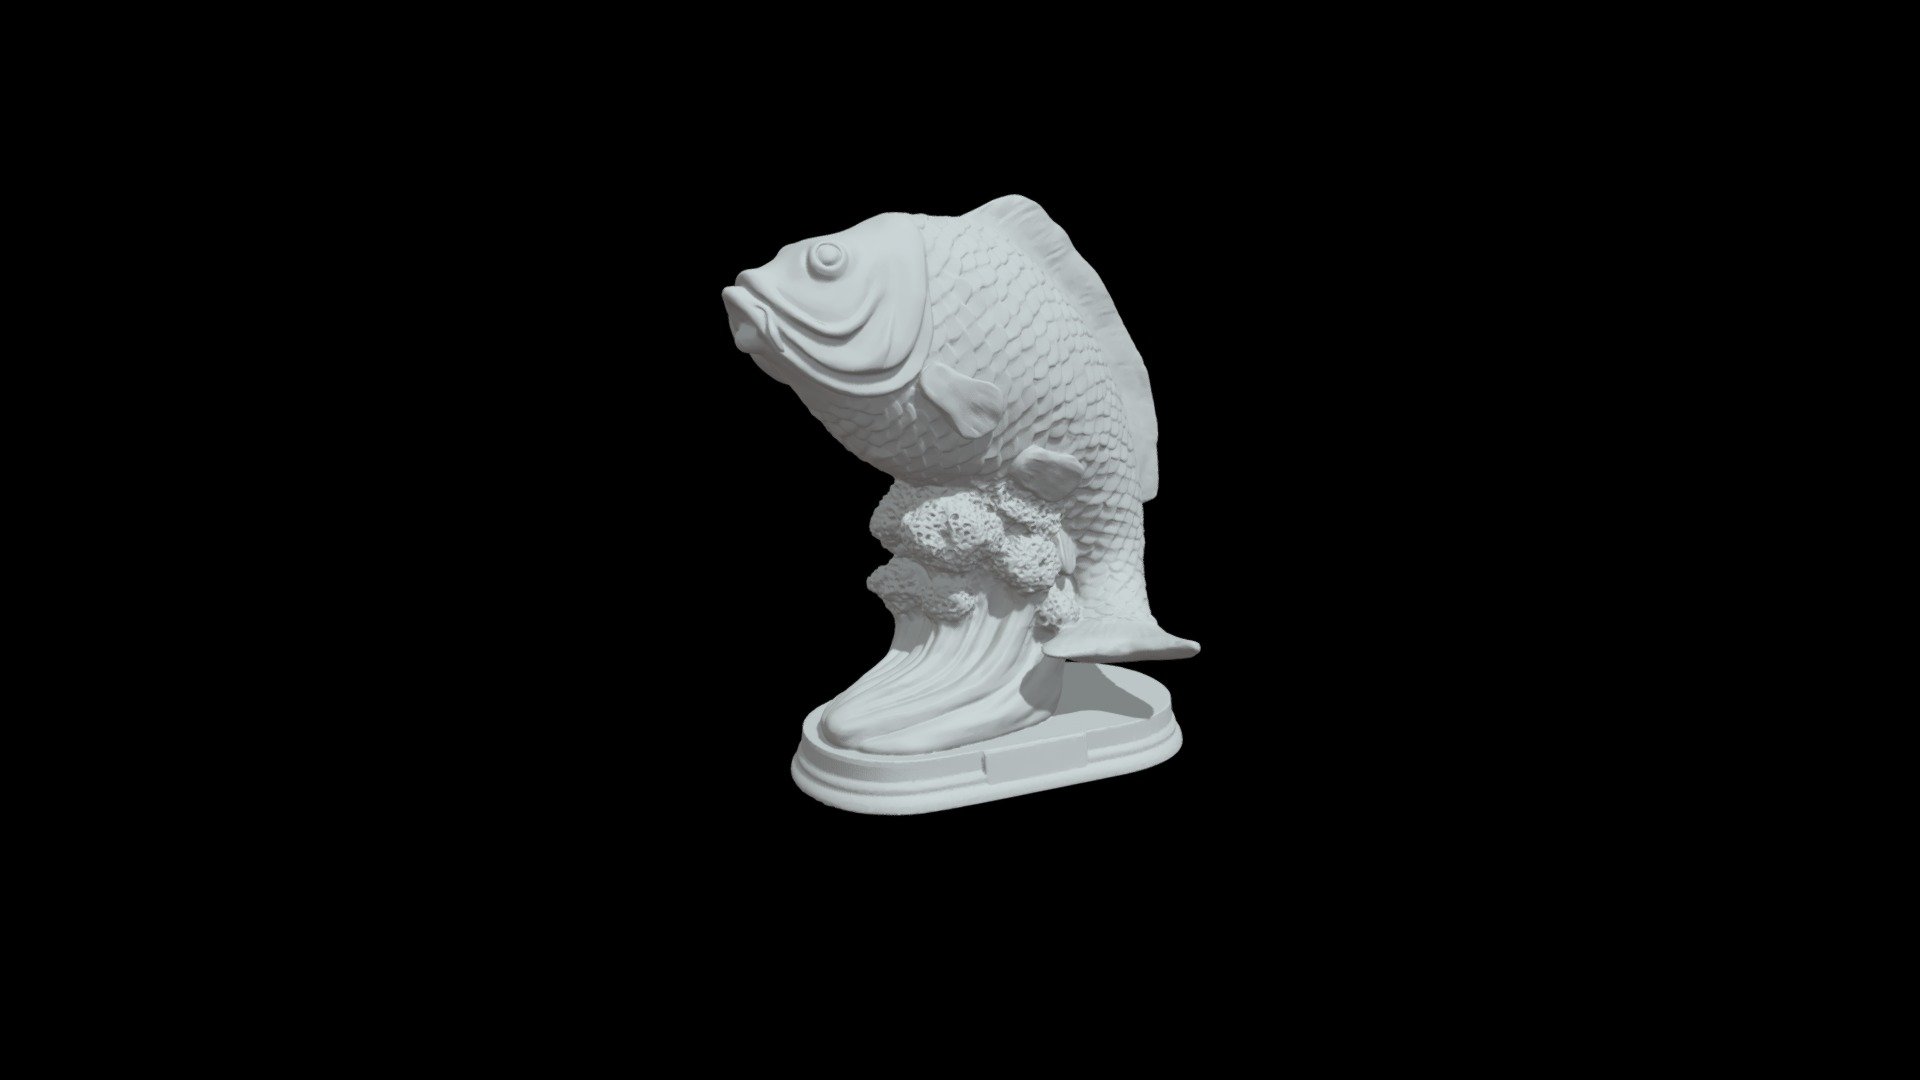 Fish 3d model  ycs.3dscanning@gmail.com - Fish - Buy Royalty Free 3D model by ycs_3d_scanning 3d model